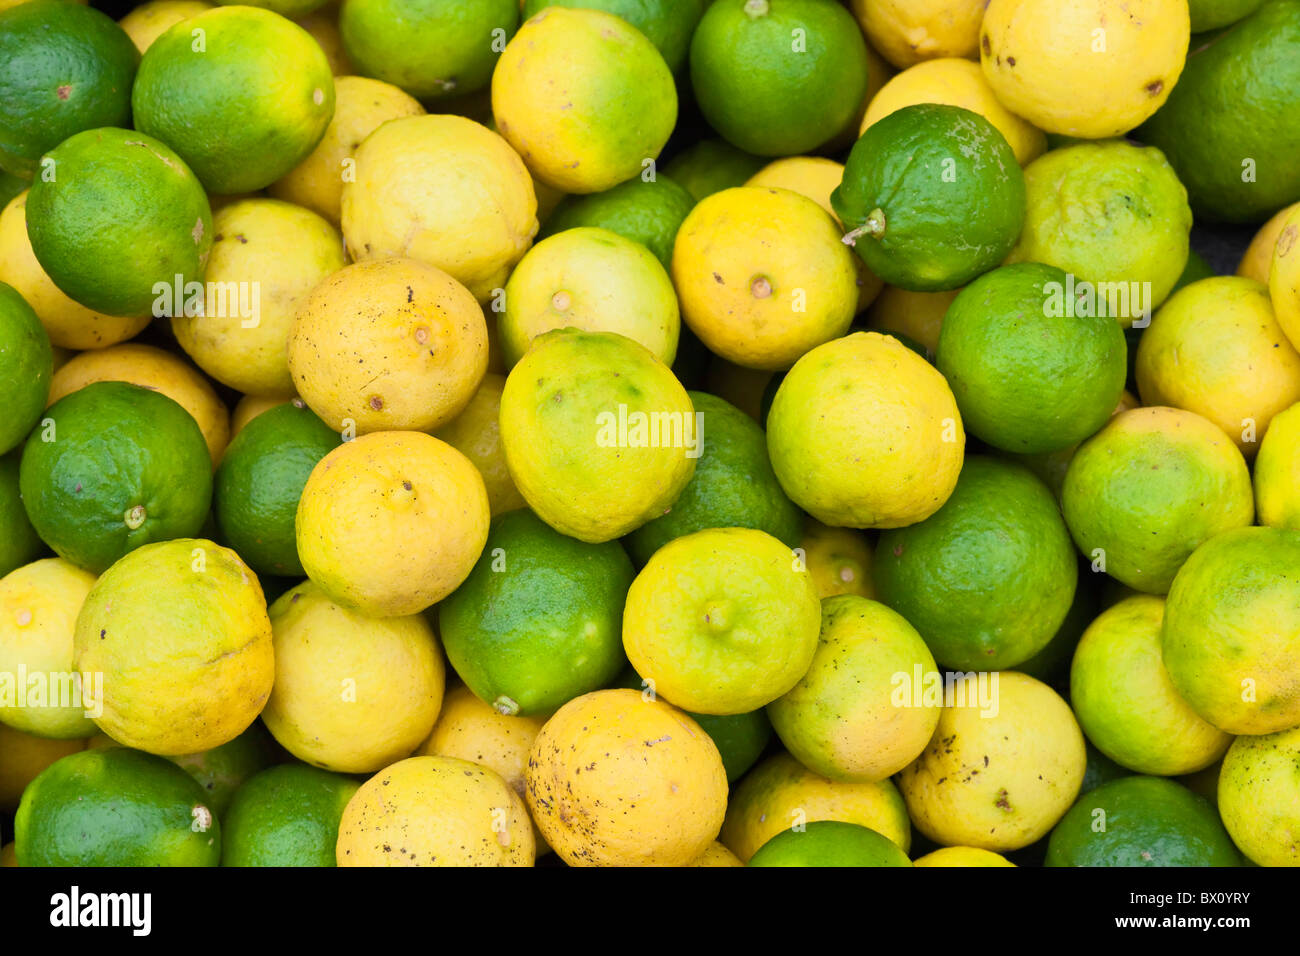 Lemons and limes Stock Photo